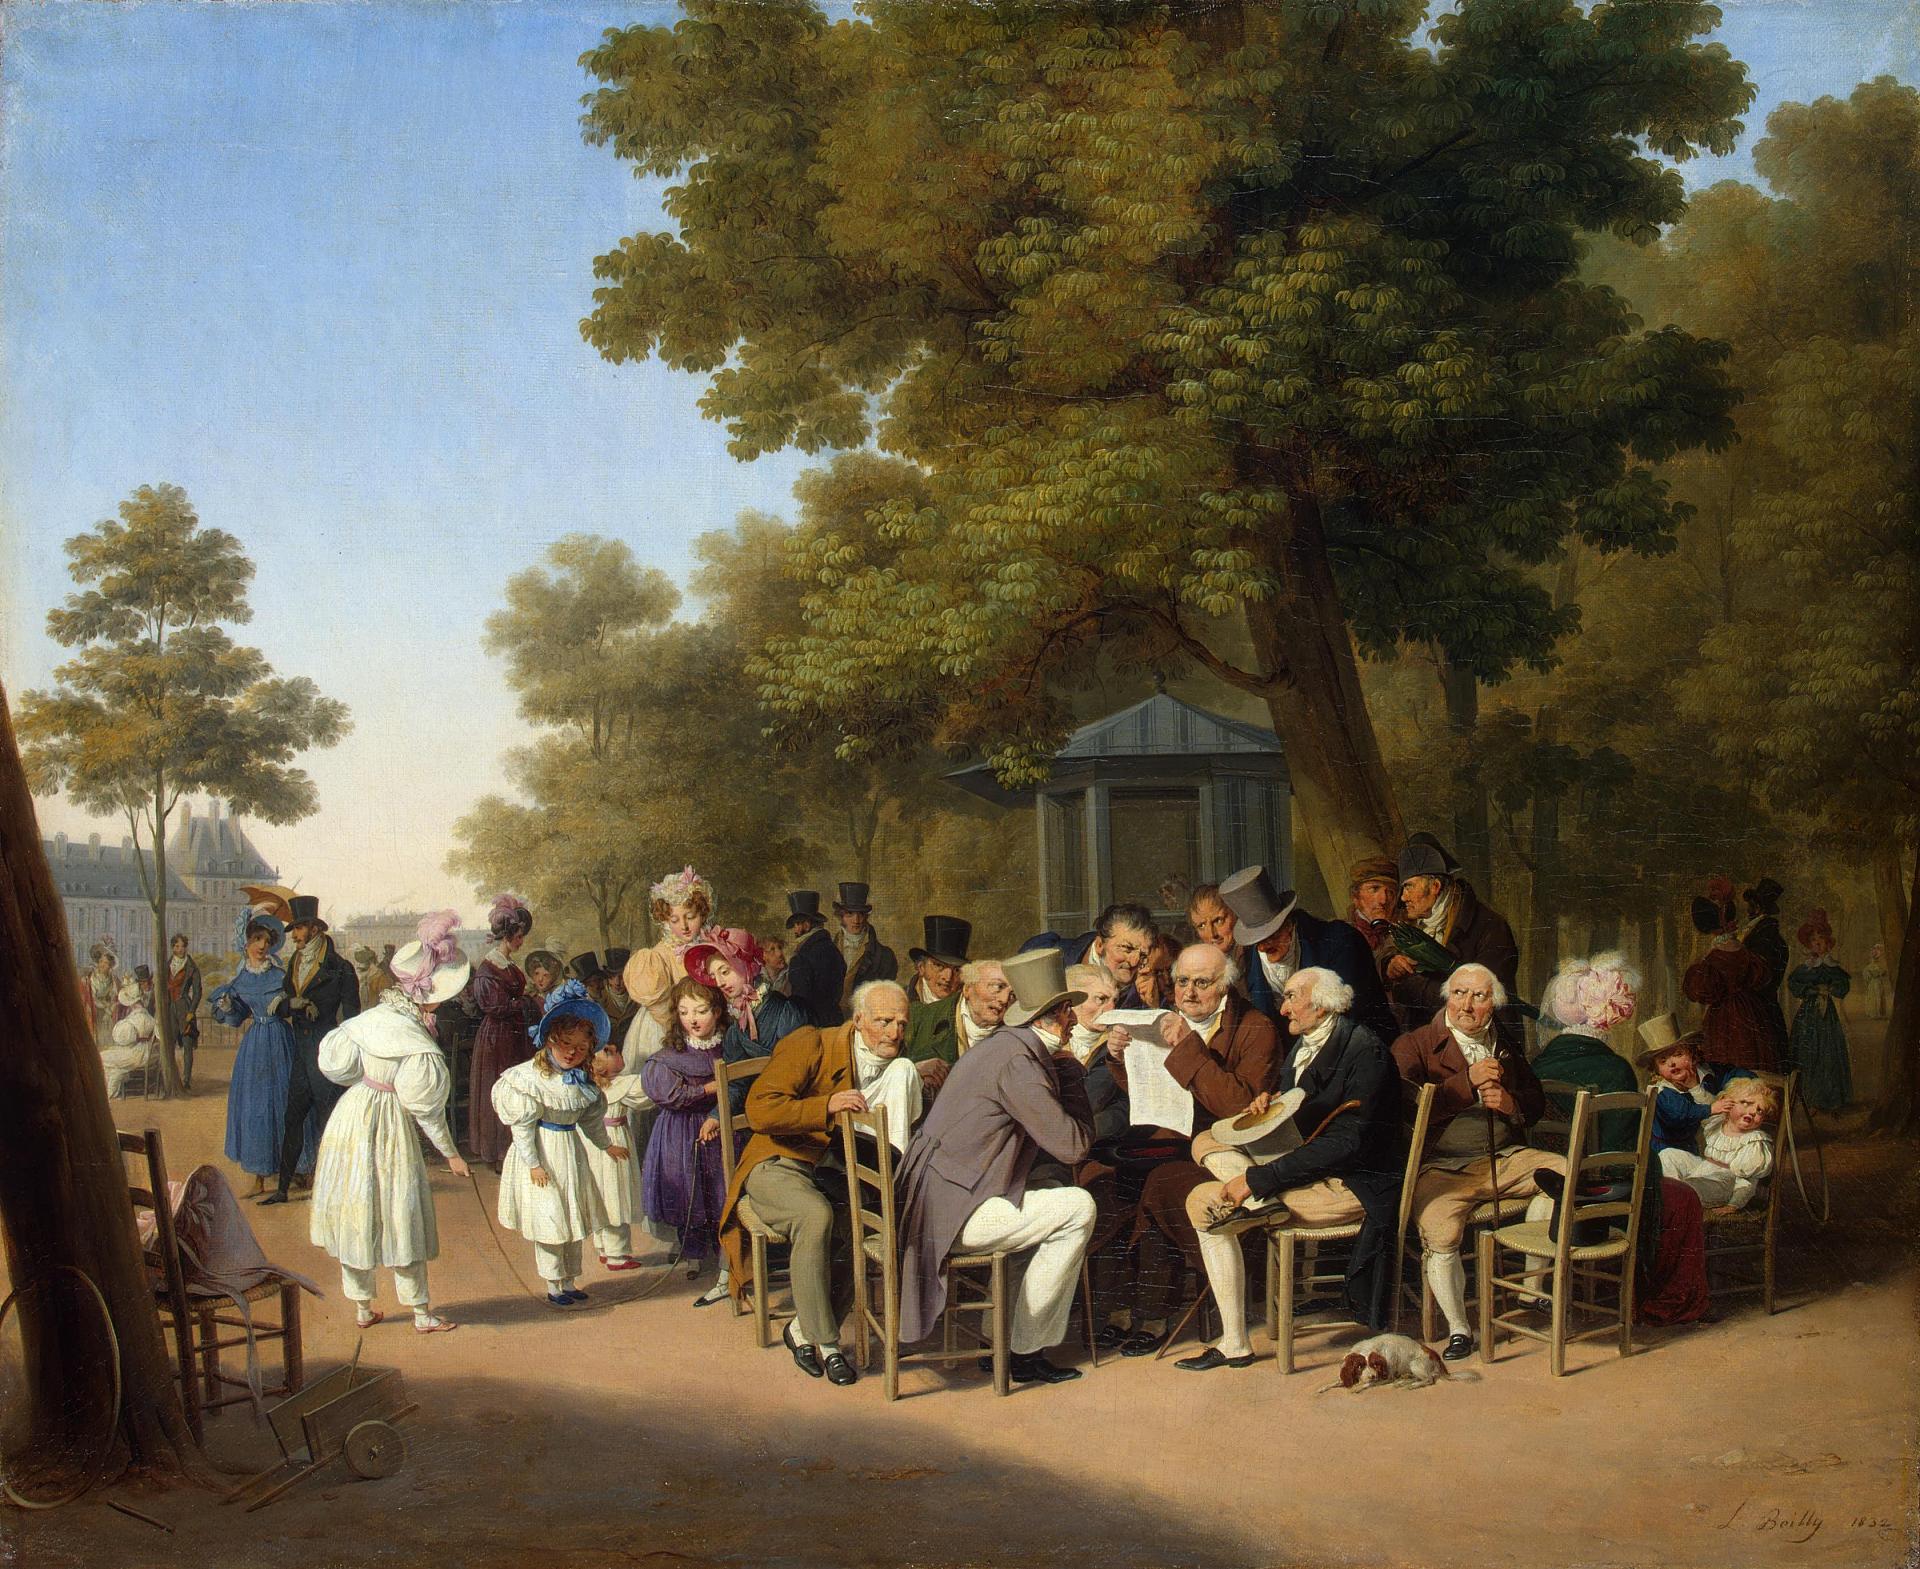 Луи Леопольд Буальи. "Политиканы в Тюильрийском саду". 1832.